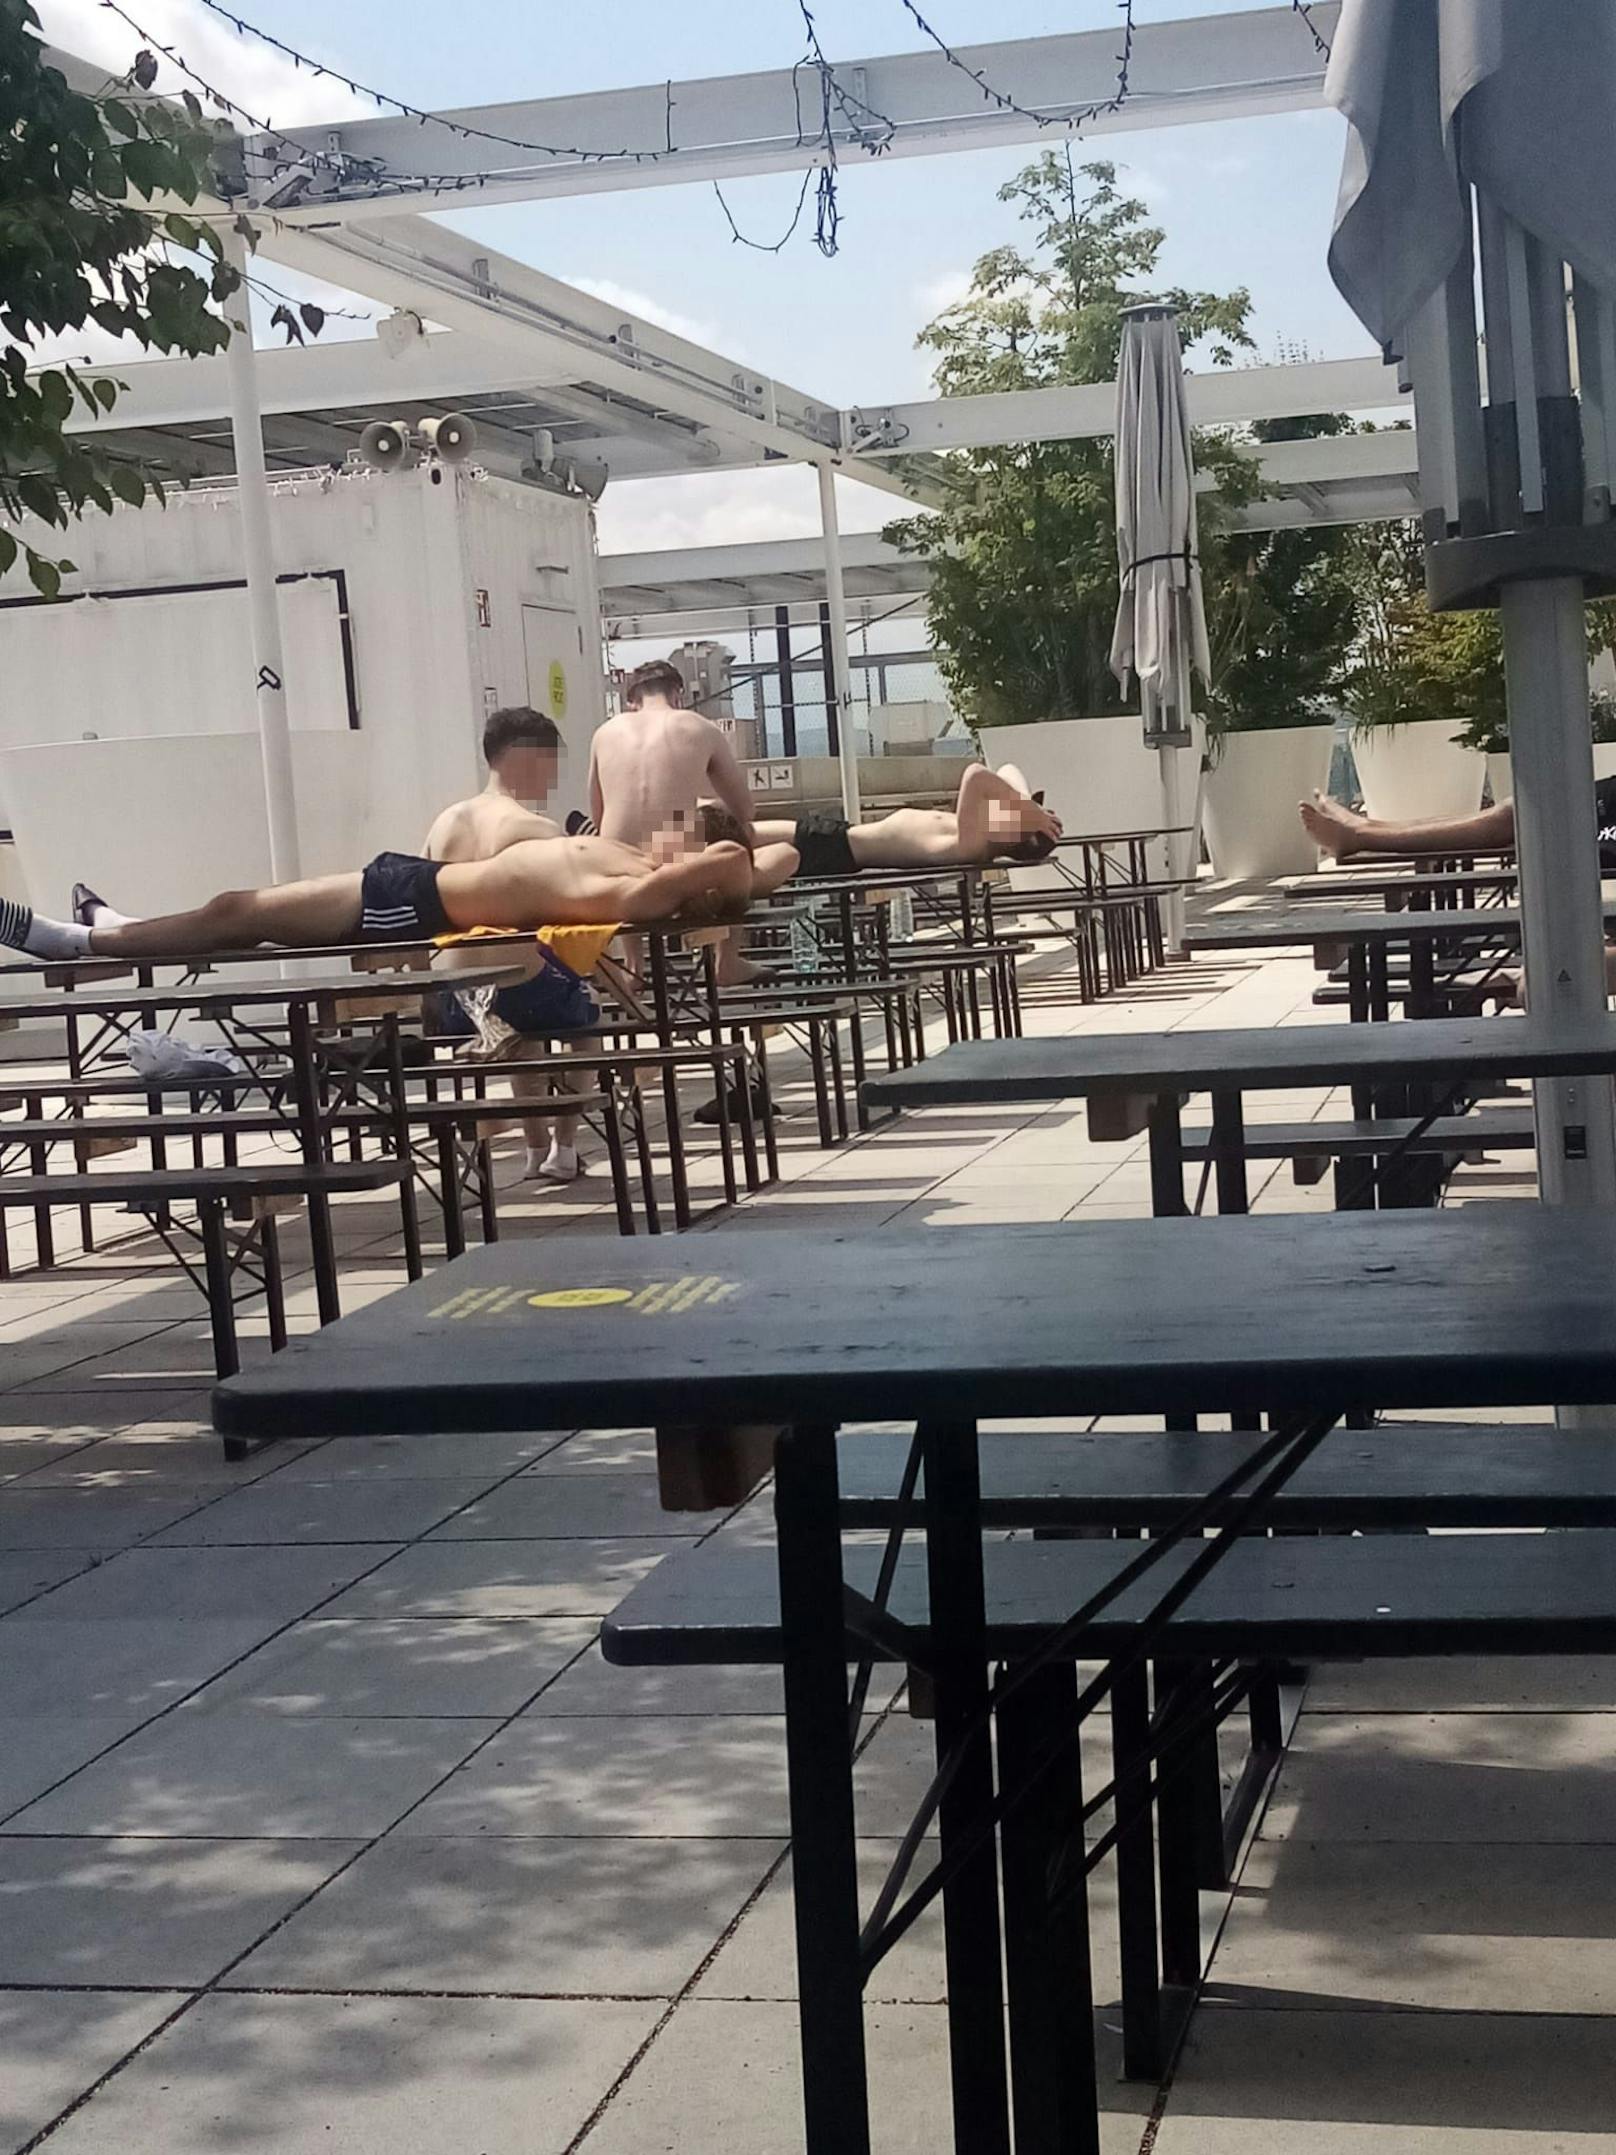 Oben ohne! Wiener baden auf Ikea-Dach in der Sonne